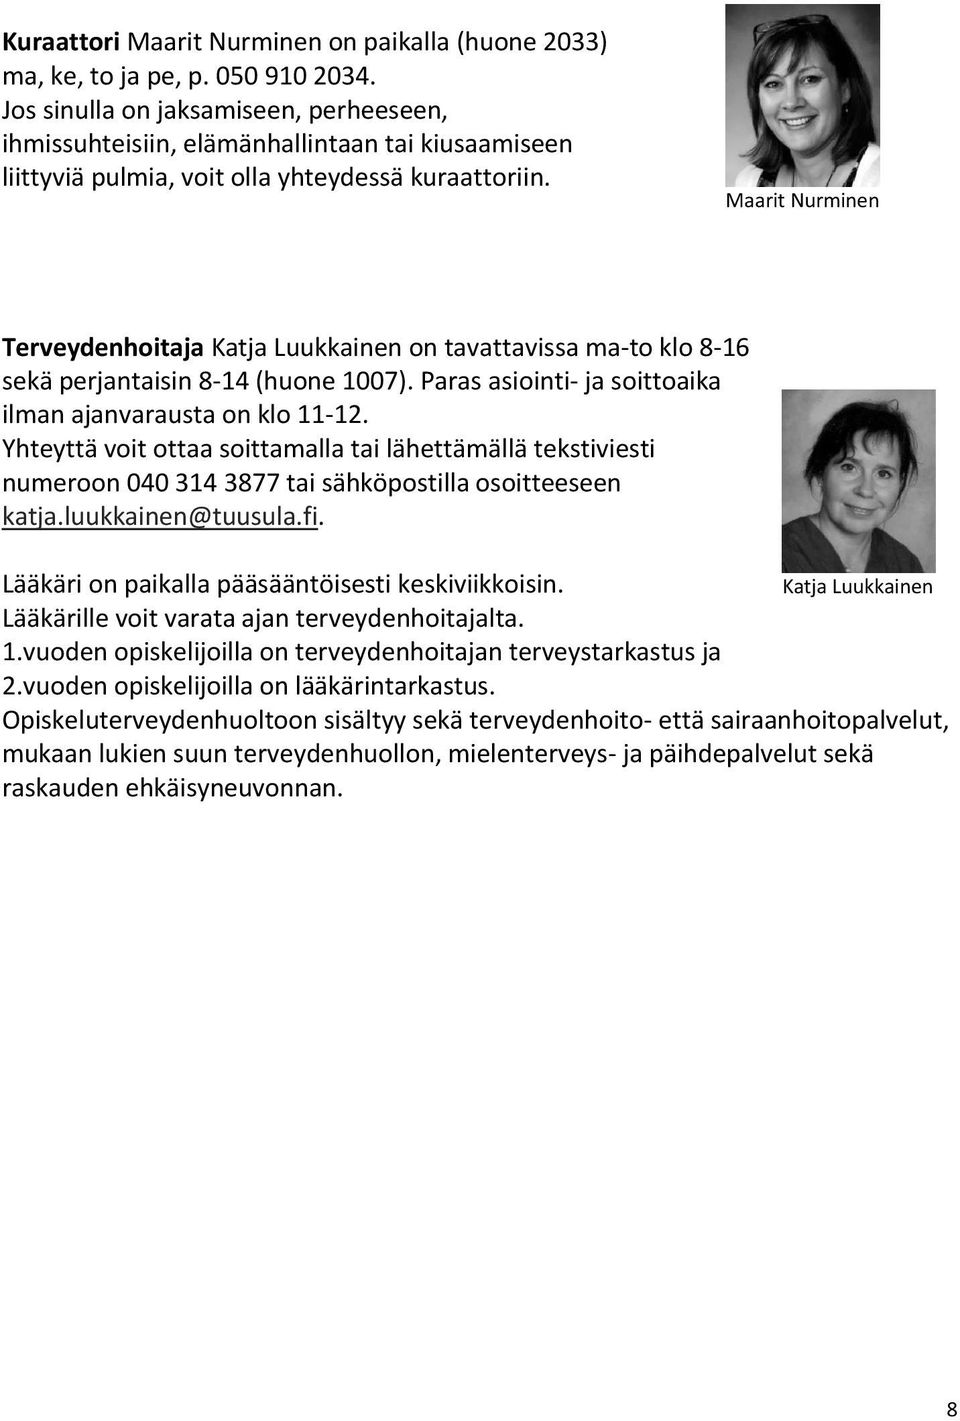 Maarit Nurminen Terveydenhoitaja Katja Luukkainen on tavattavissa ma-to klo 8-16 sekä perjantaisin 8-14 (huone 1007). Paras asiointi- ja soittoaika ilman ajanvarausta on klo 11-12.